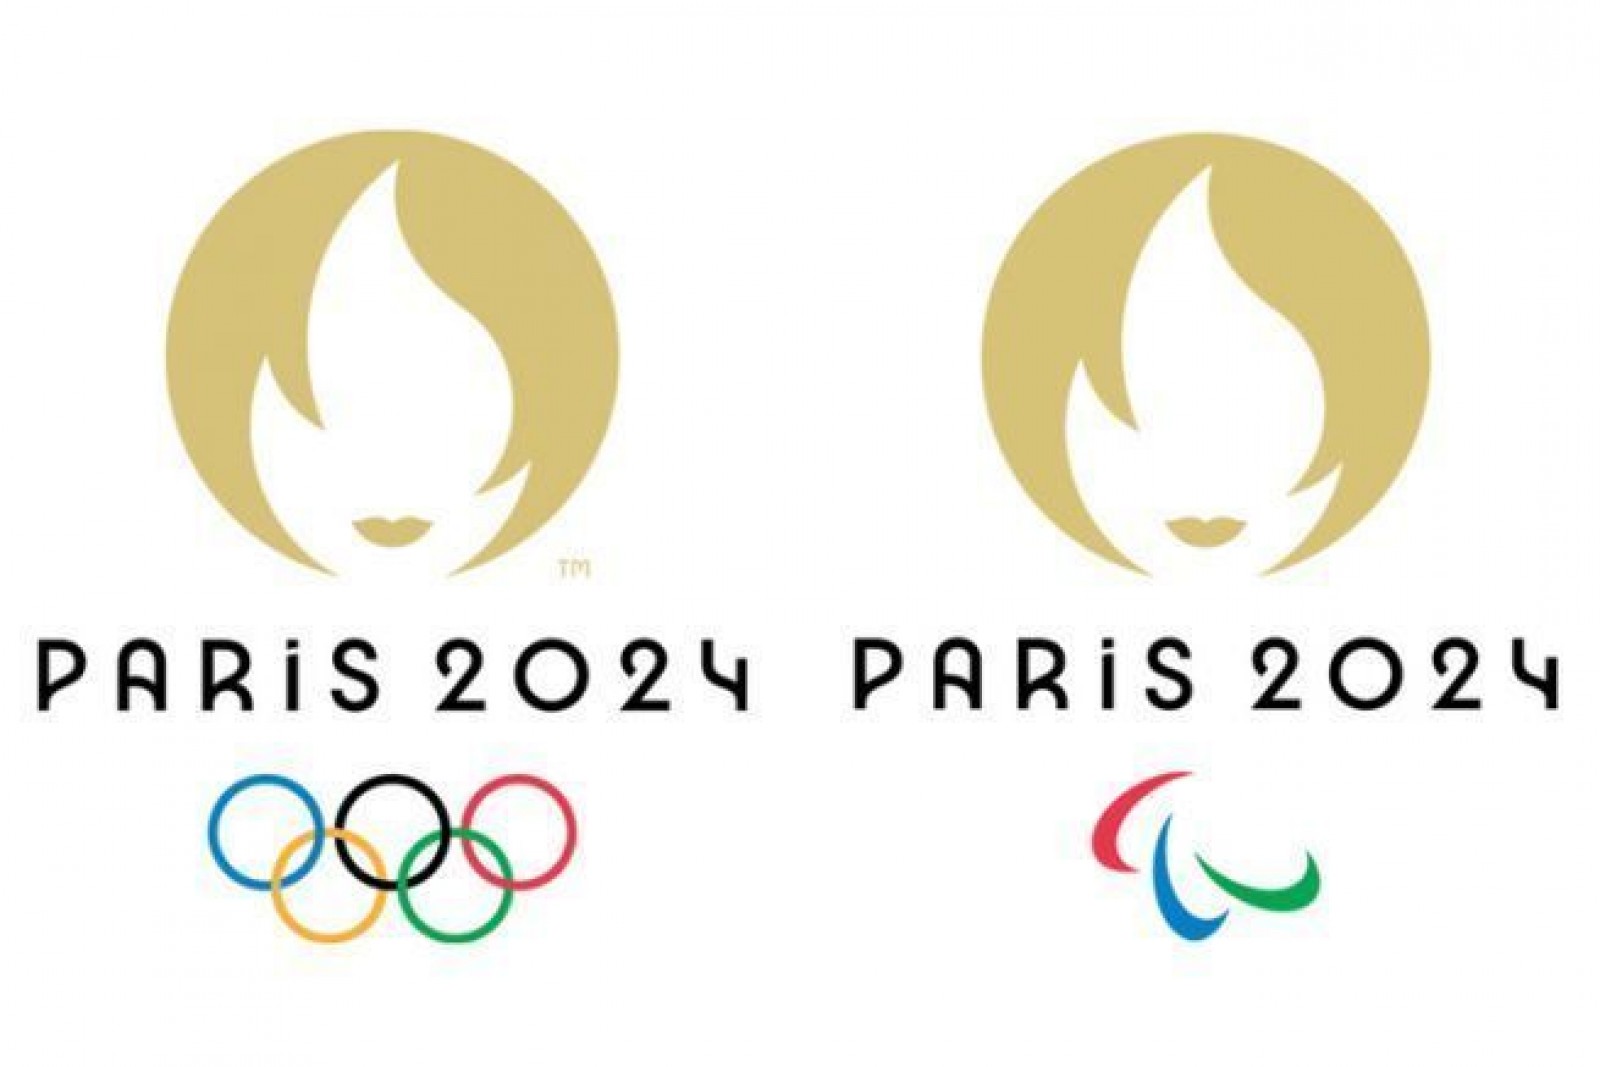 Explorez les Jeux Olympiques 2024 à Paris avec élégance et confort grâce à LH DRIVER'S, votre service Vtc chauffeur privé d'exception! 